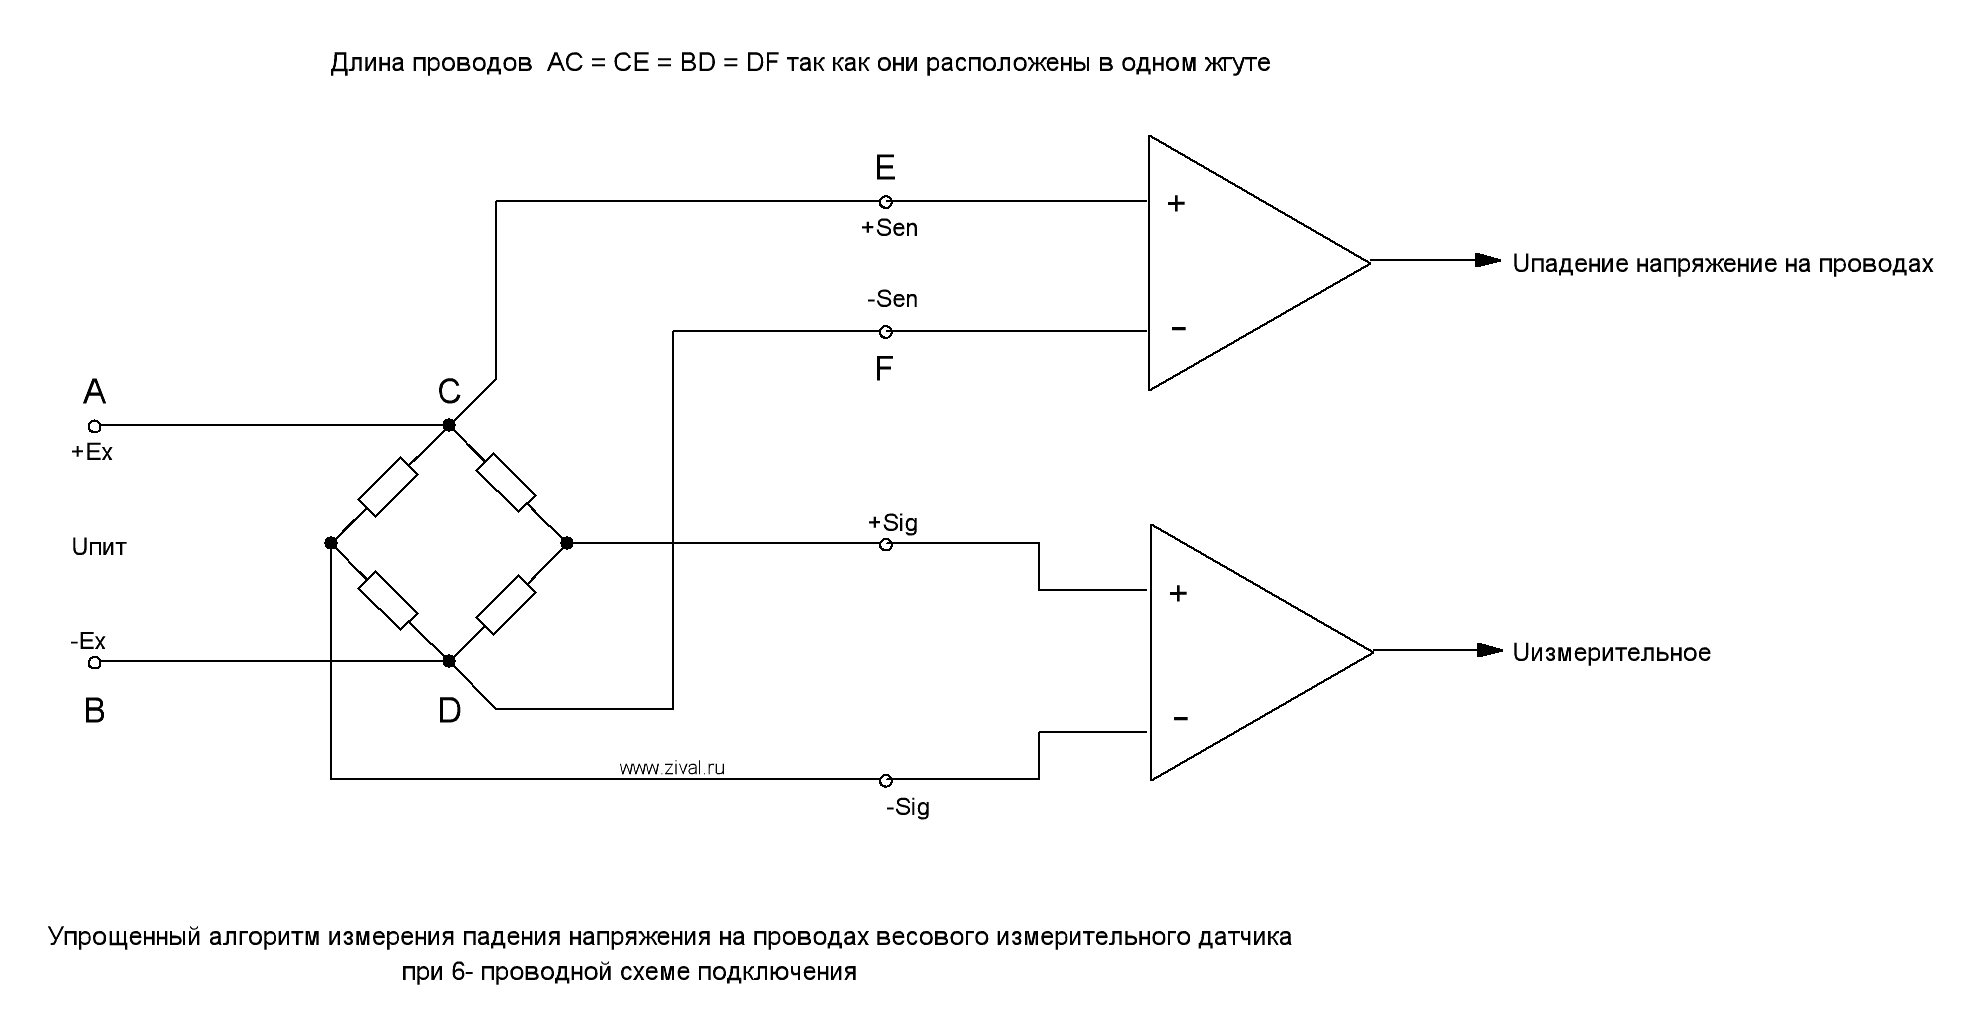 Упрощенный алгоритм работы оратной связи для компенсации падения напряжения на проводах